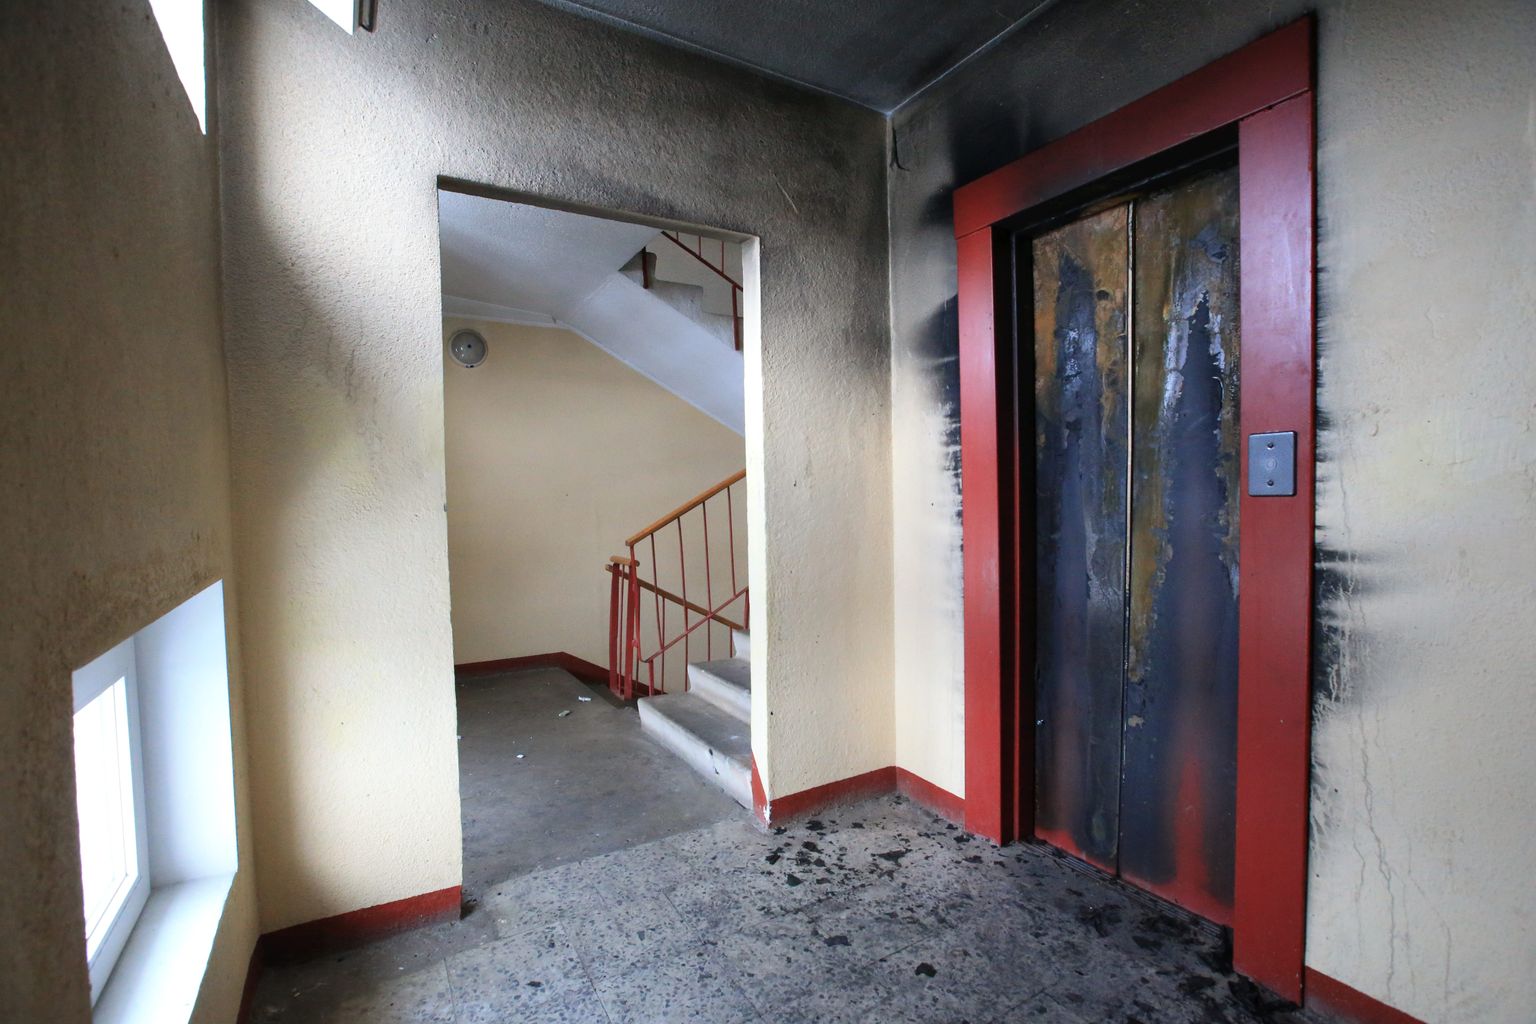 20. novembri hommikul kell 5.36 sai häirekeskus teate, et Tartus Mõisavahe 46 on üheksakorruselise korterelamu trepikojas suits. Tulekolle asus 5. ja 6. korruse vahele kinni jäänud liftis.